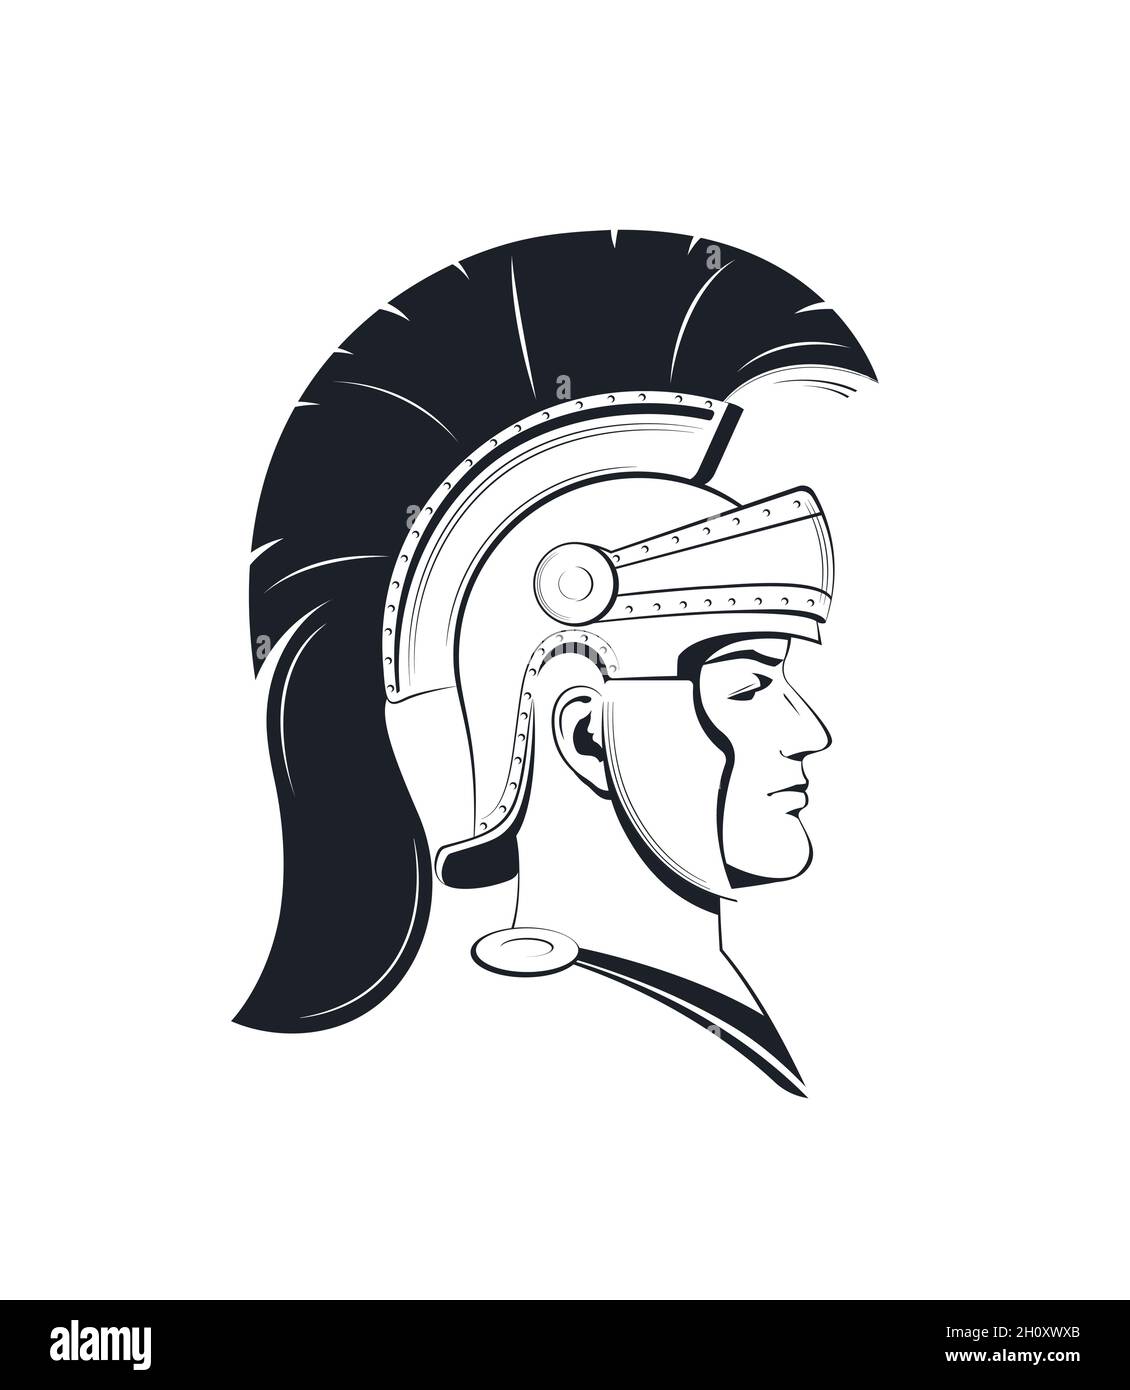 Casco romano antiguo Imágenes de stock en blanco y negro - Alamy